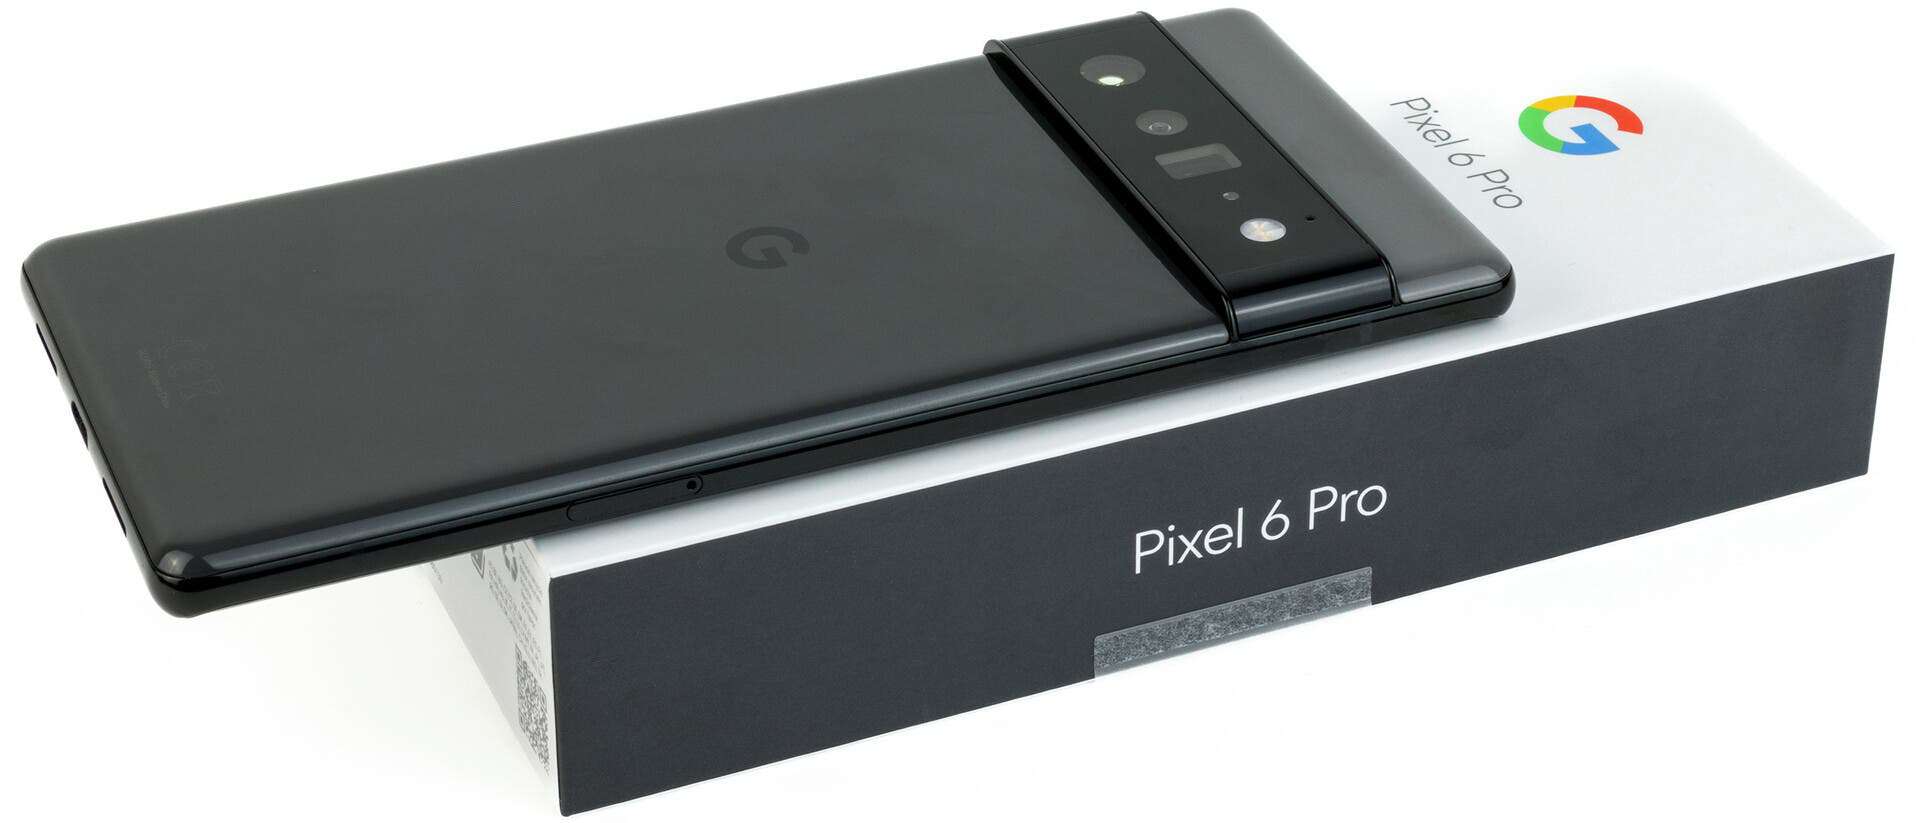 Best Pixel phones